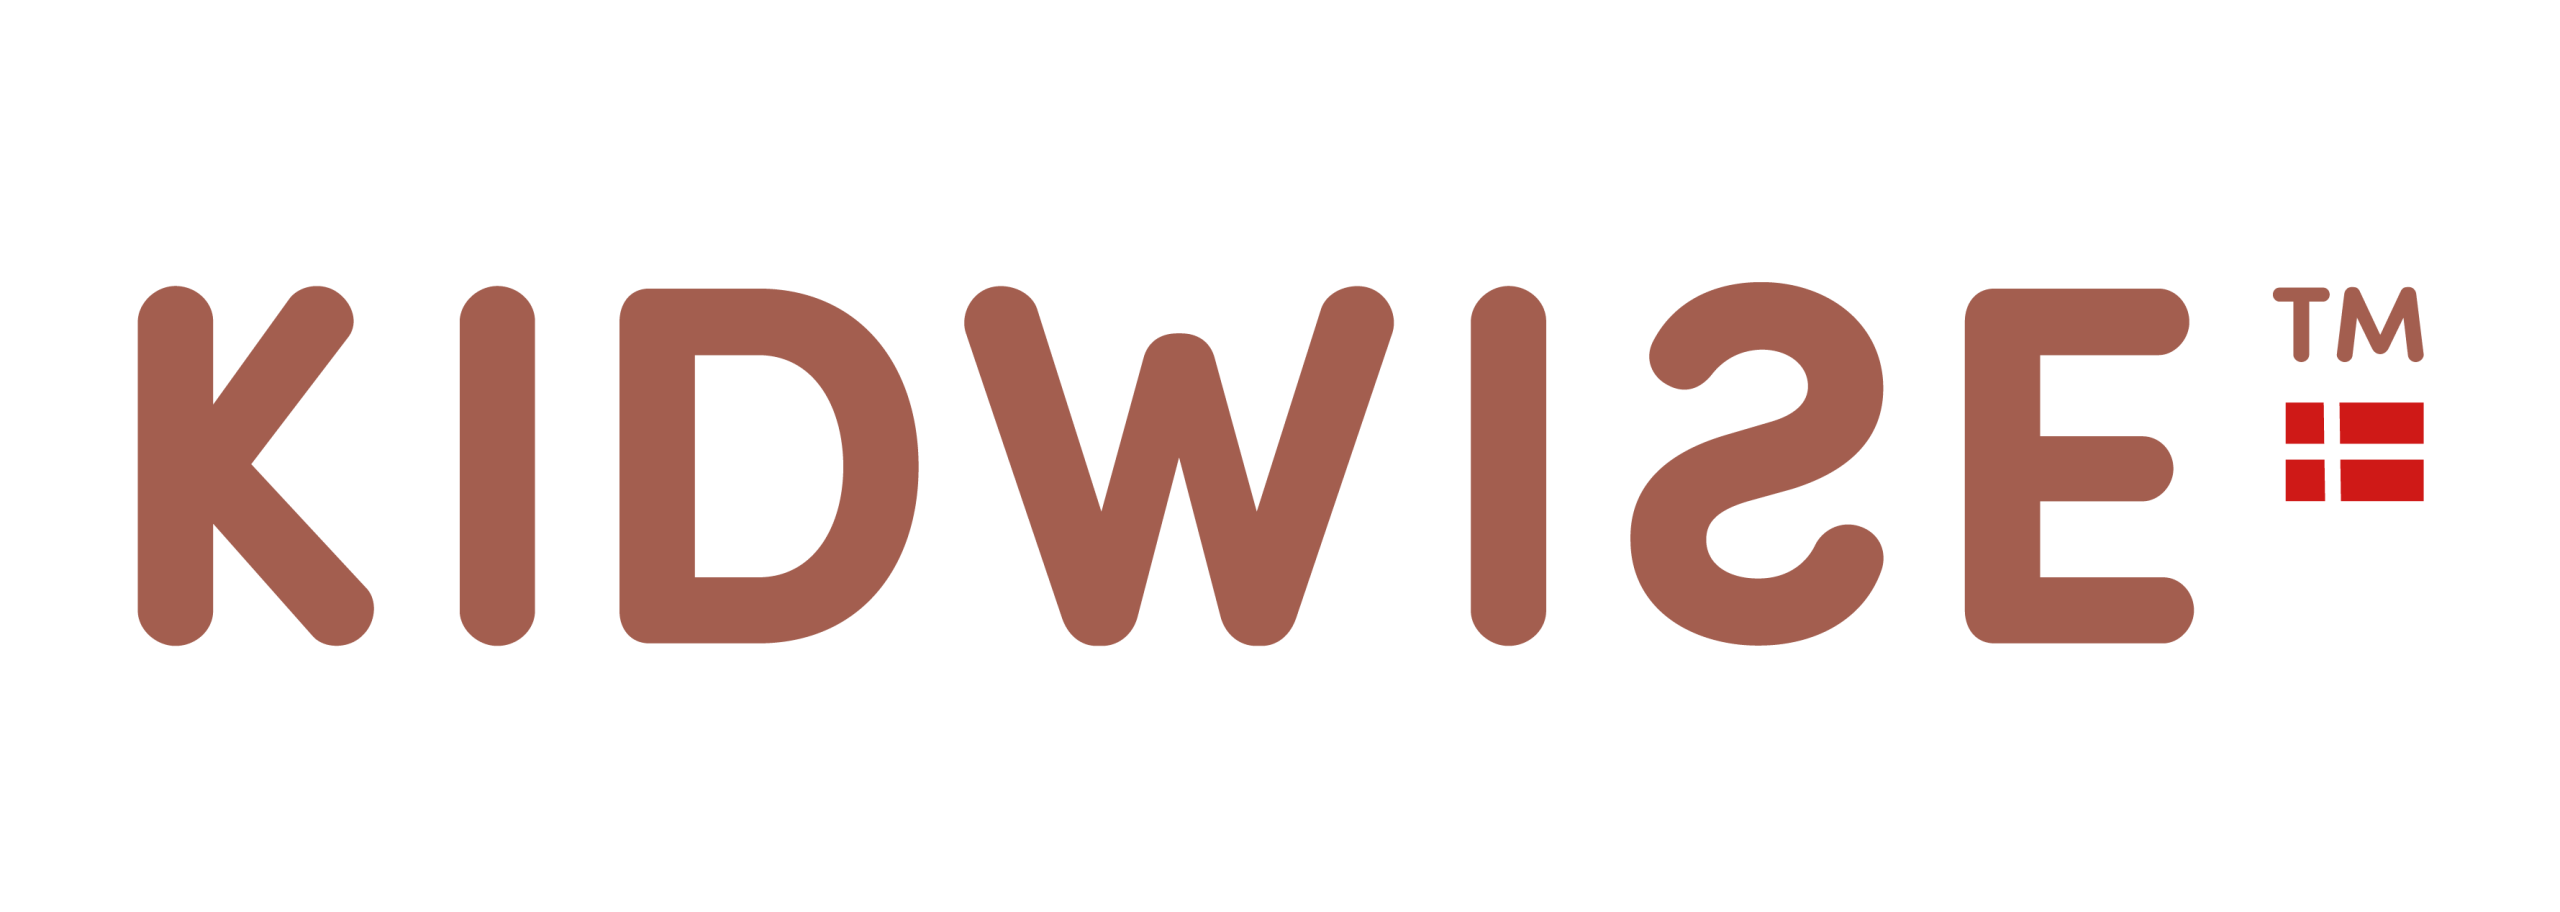 KIDWISE logo